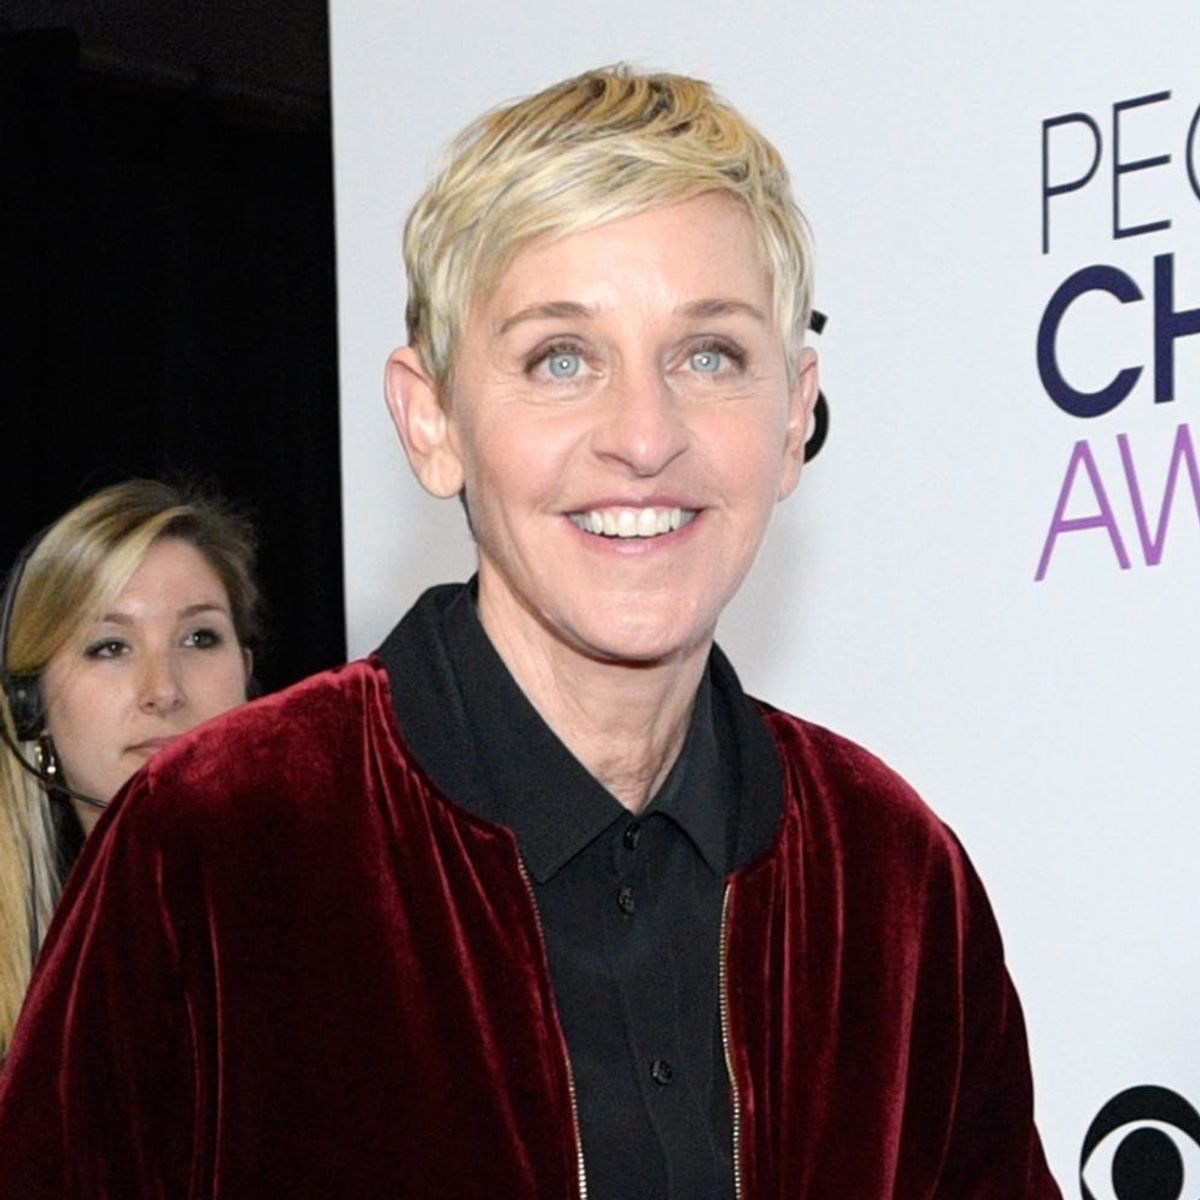 Ellen DeGeneres Just Gave Us the “LWYMMD” Spoof We Never Knew We Needed